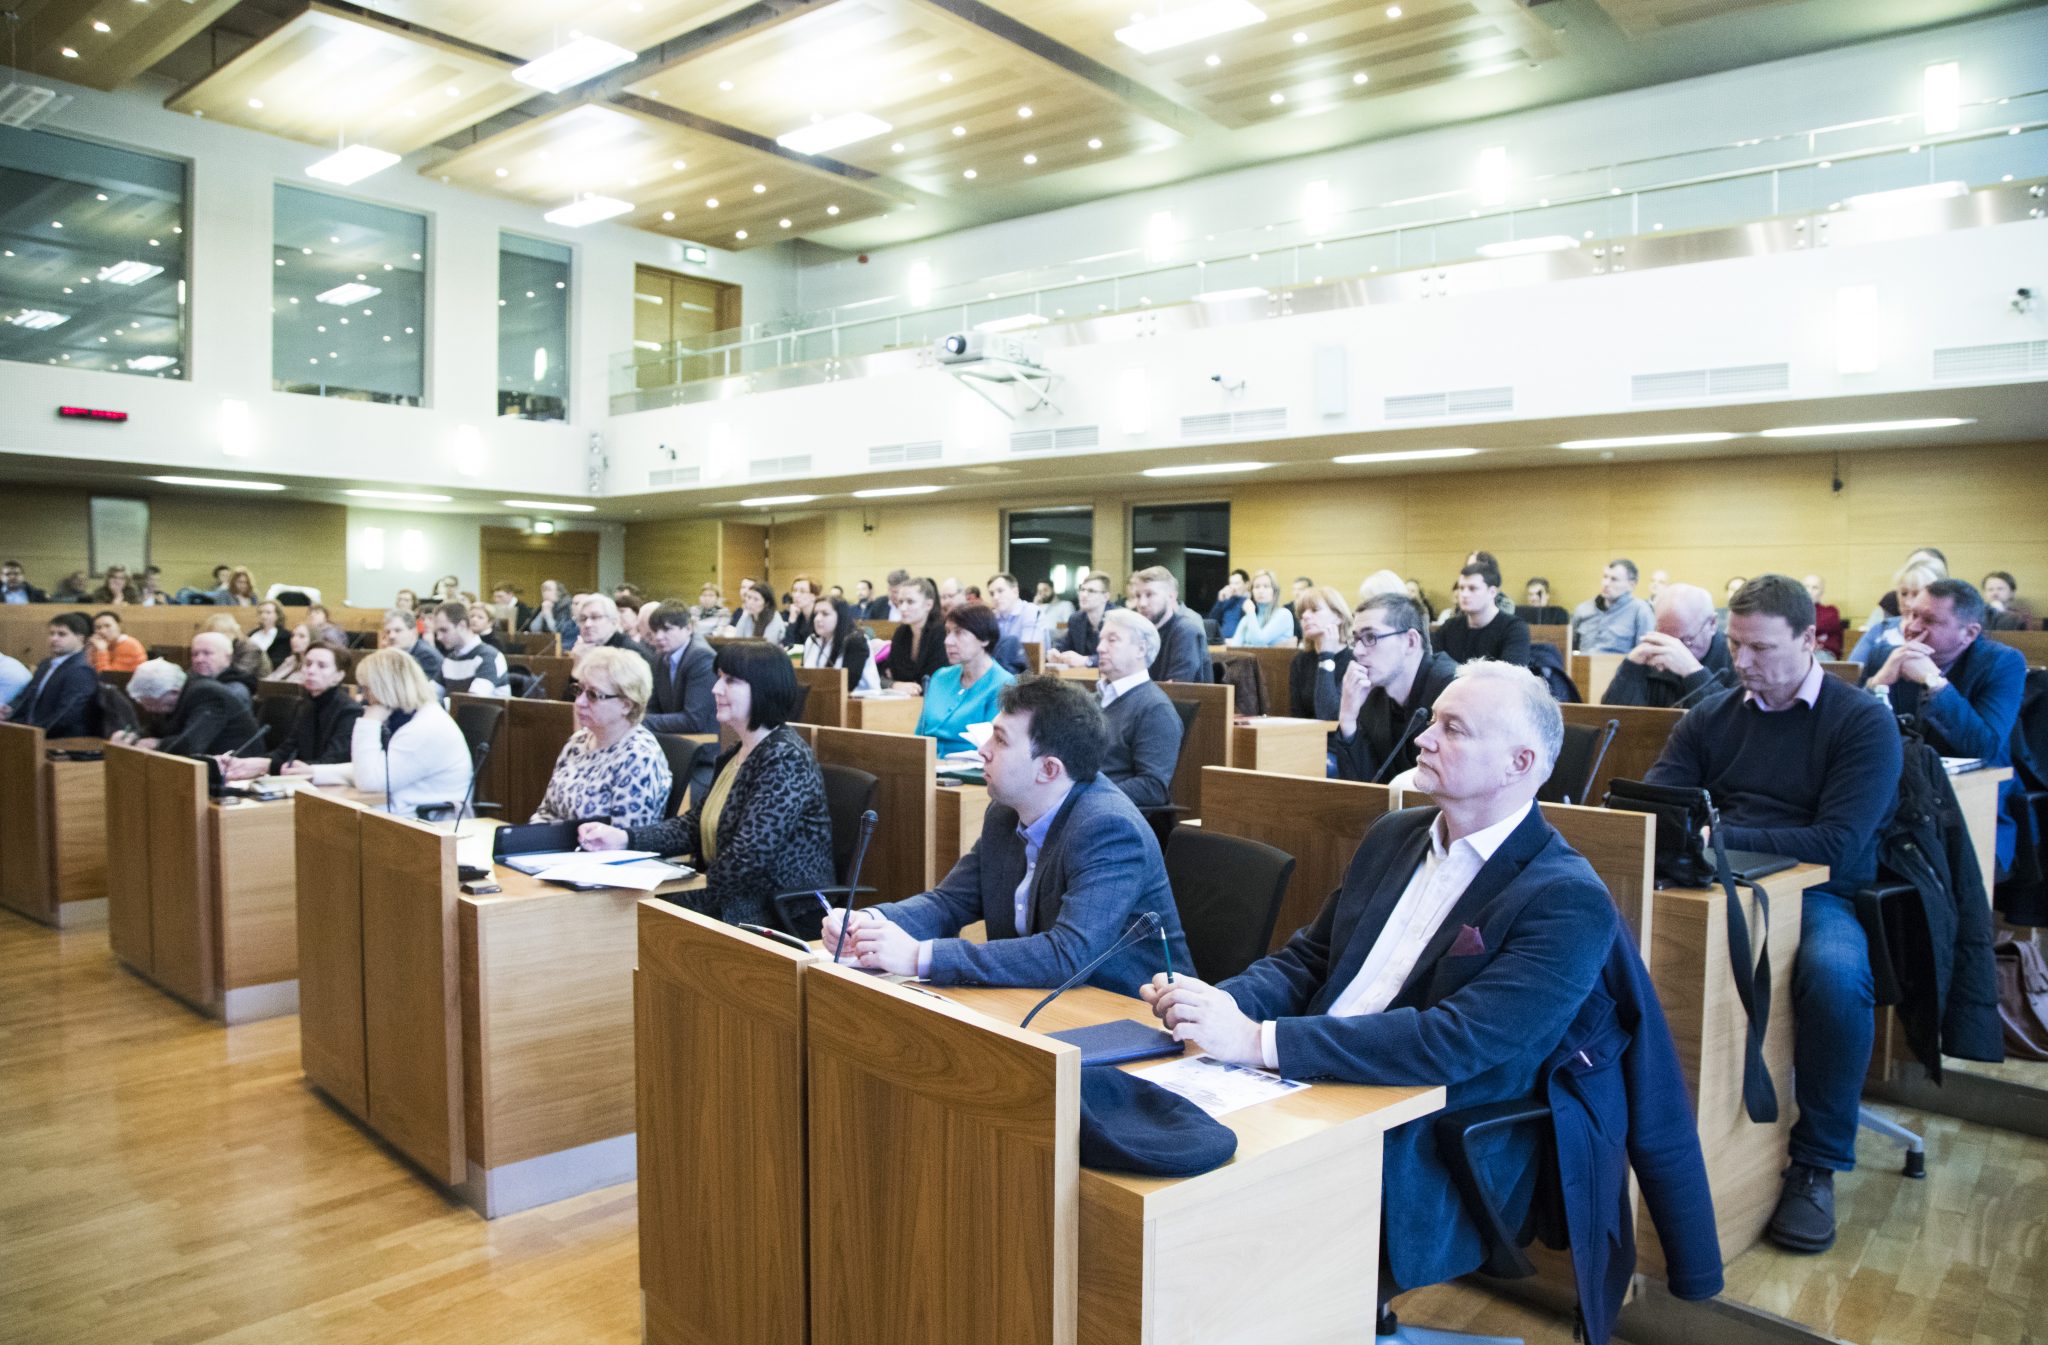 Vairāk nekā 80 namīpašnieku piedalījās seminārā par Rīgas pašvaldības līdzfinansējuma saņemšanu kultūras pieminekļu saglabāšanai